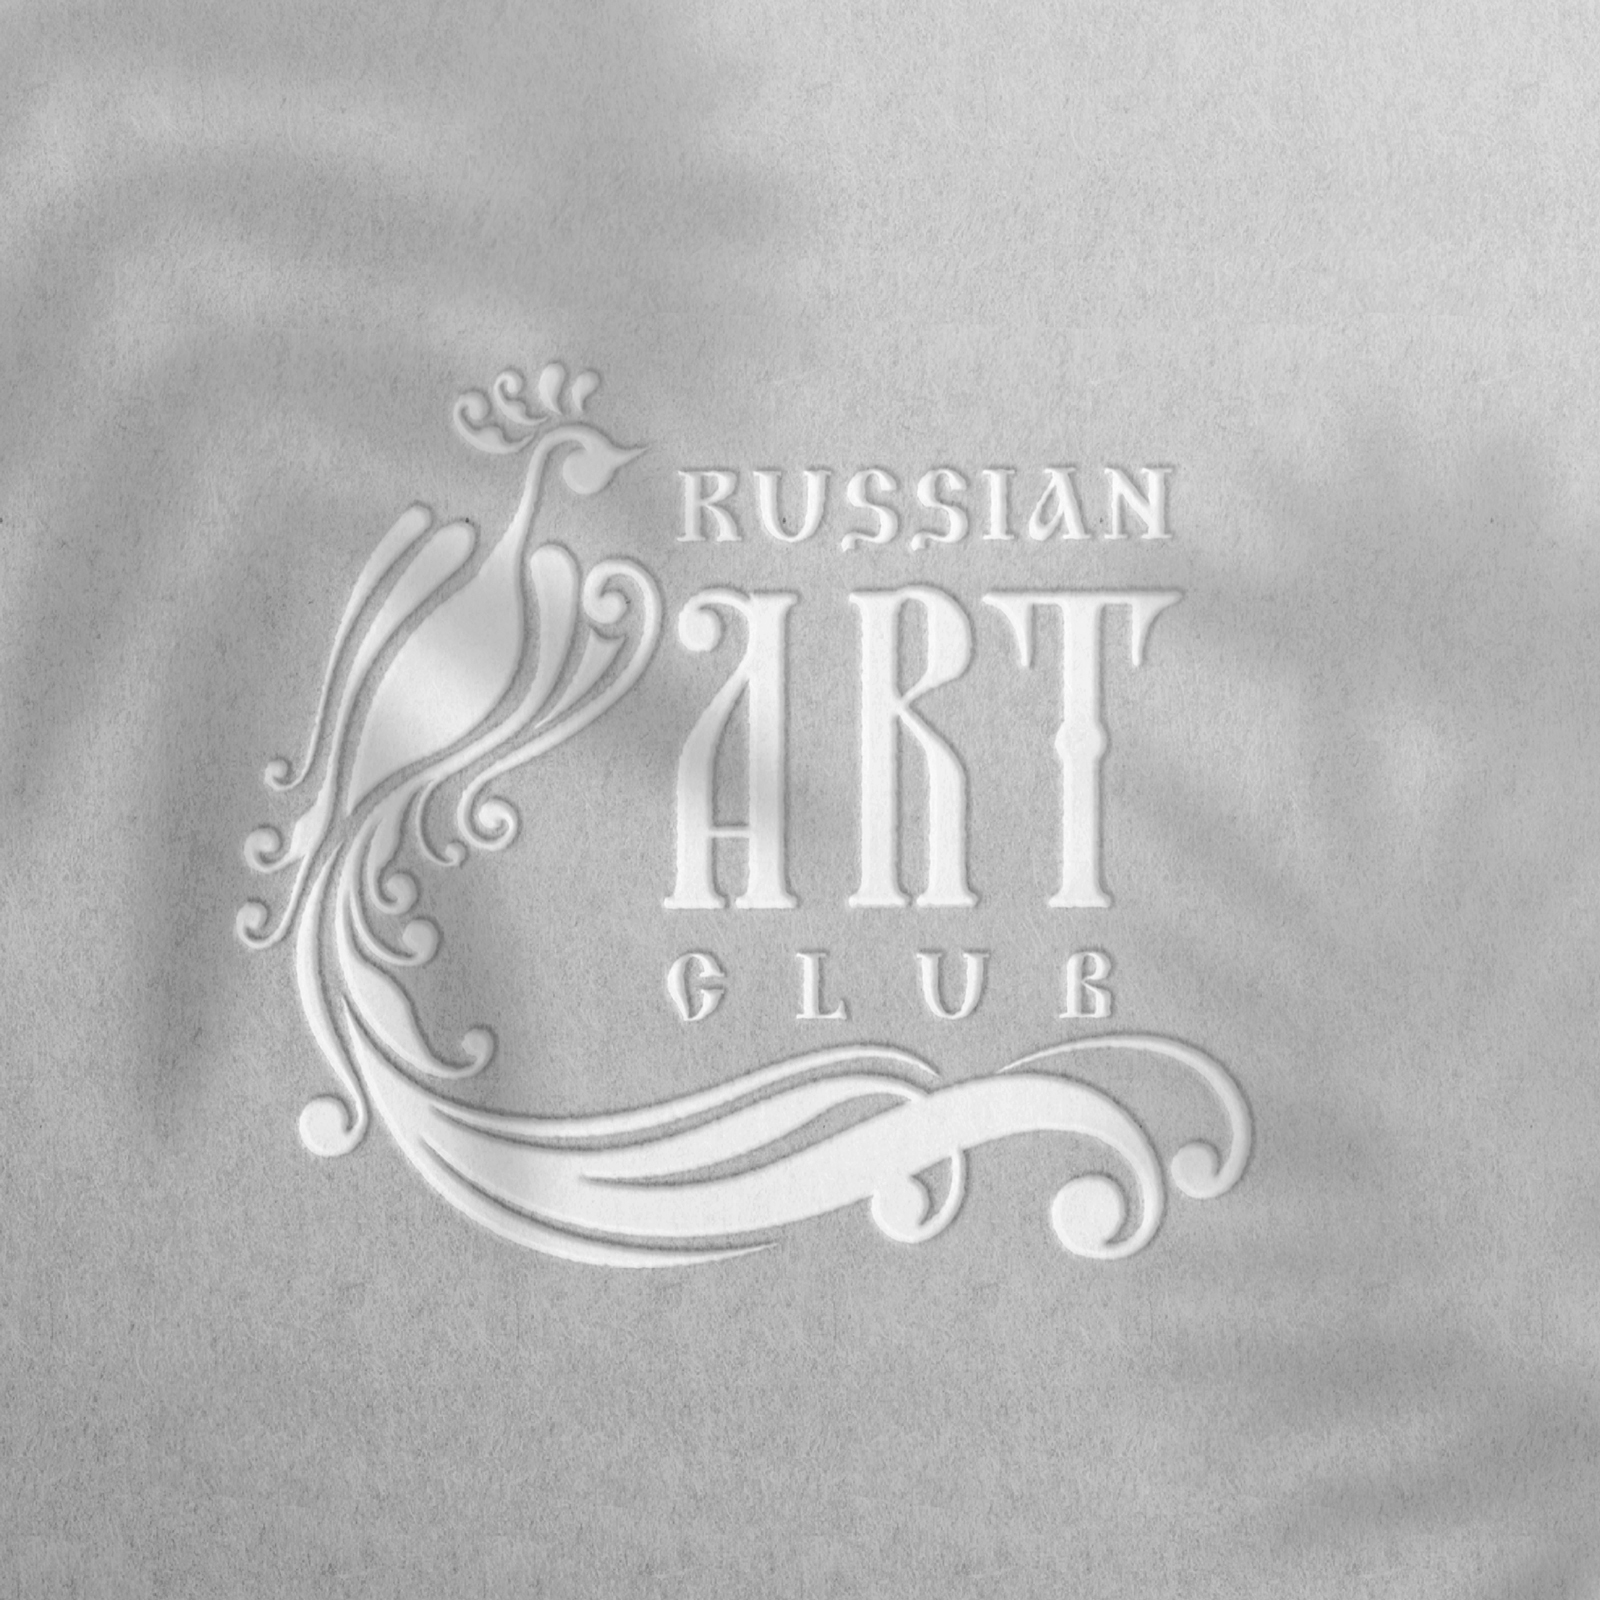 Russian Art Club